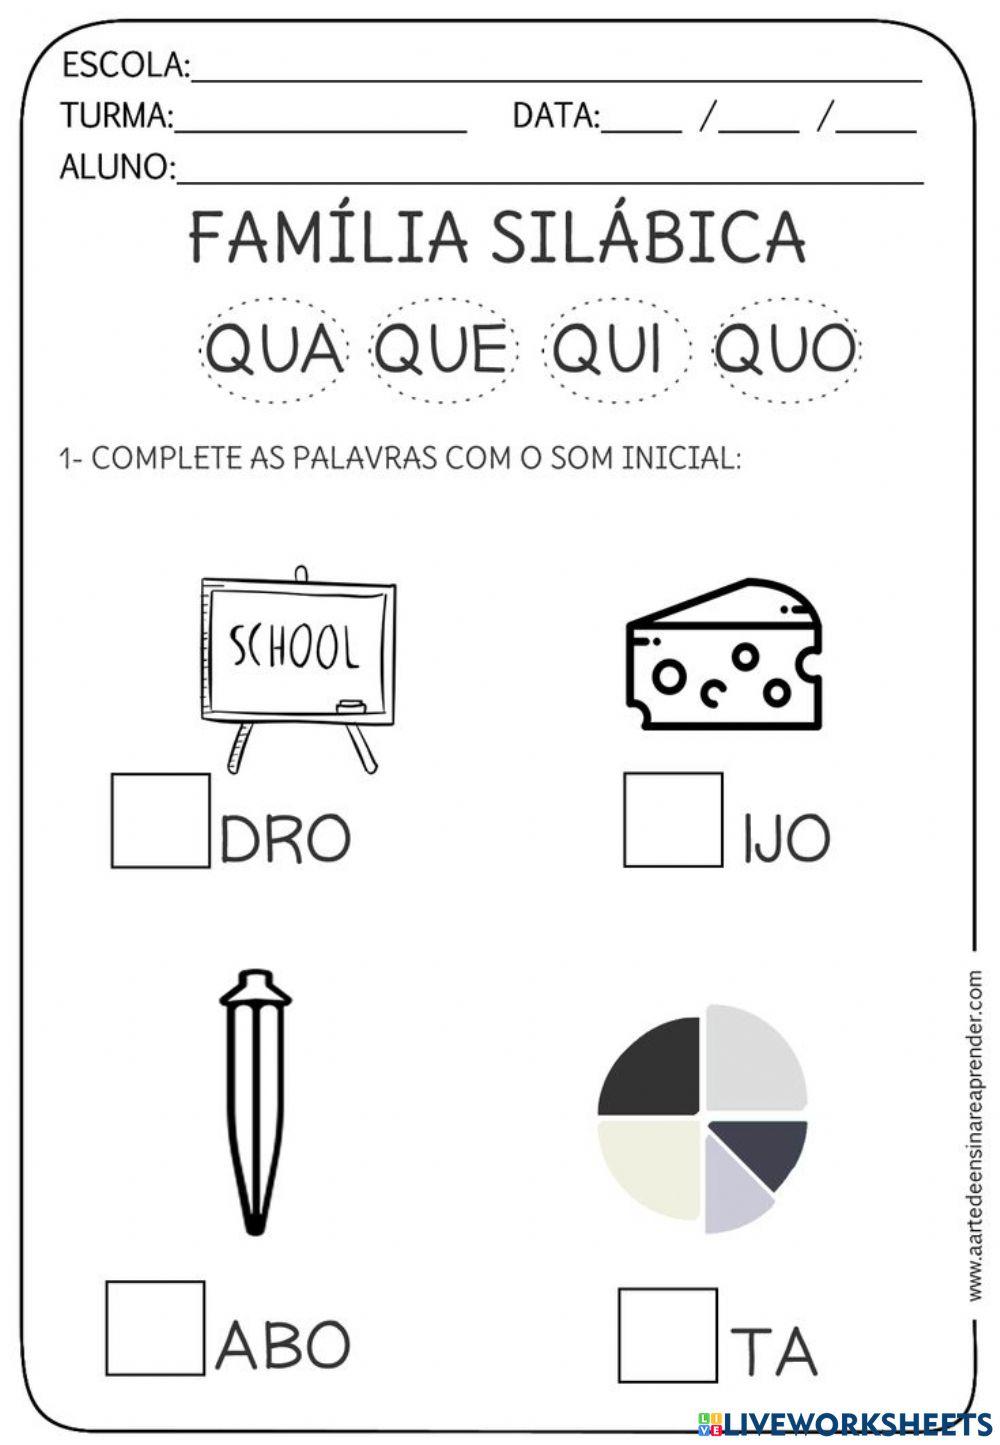 Familia silabia - q